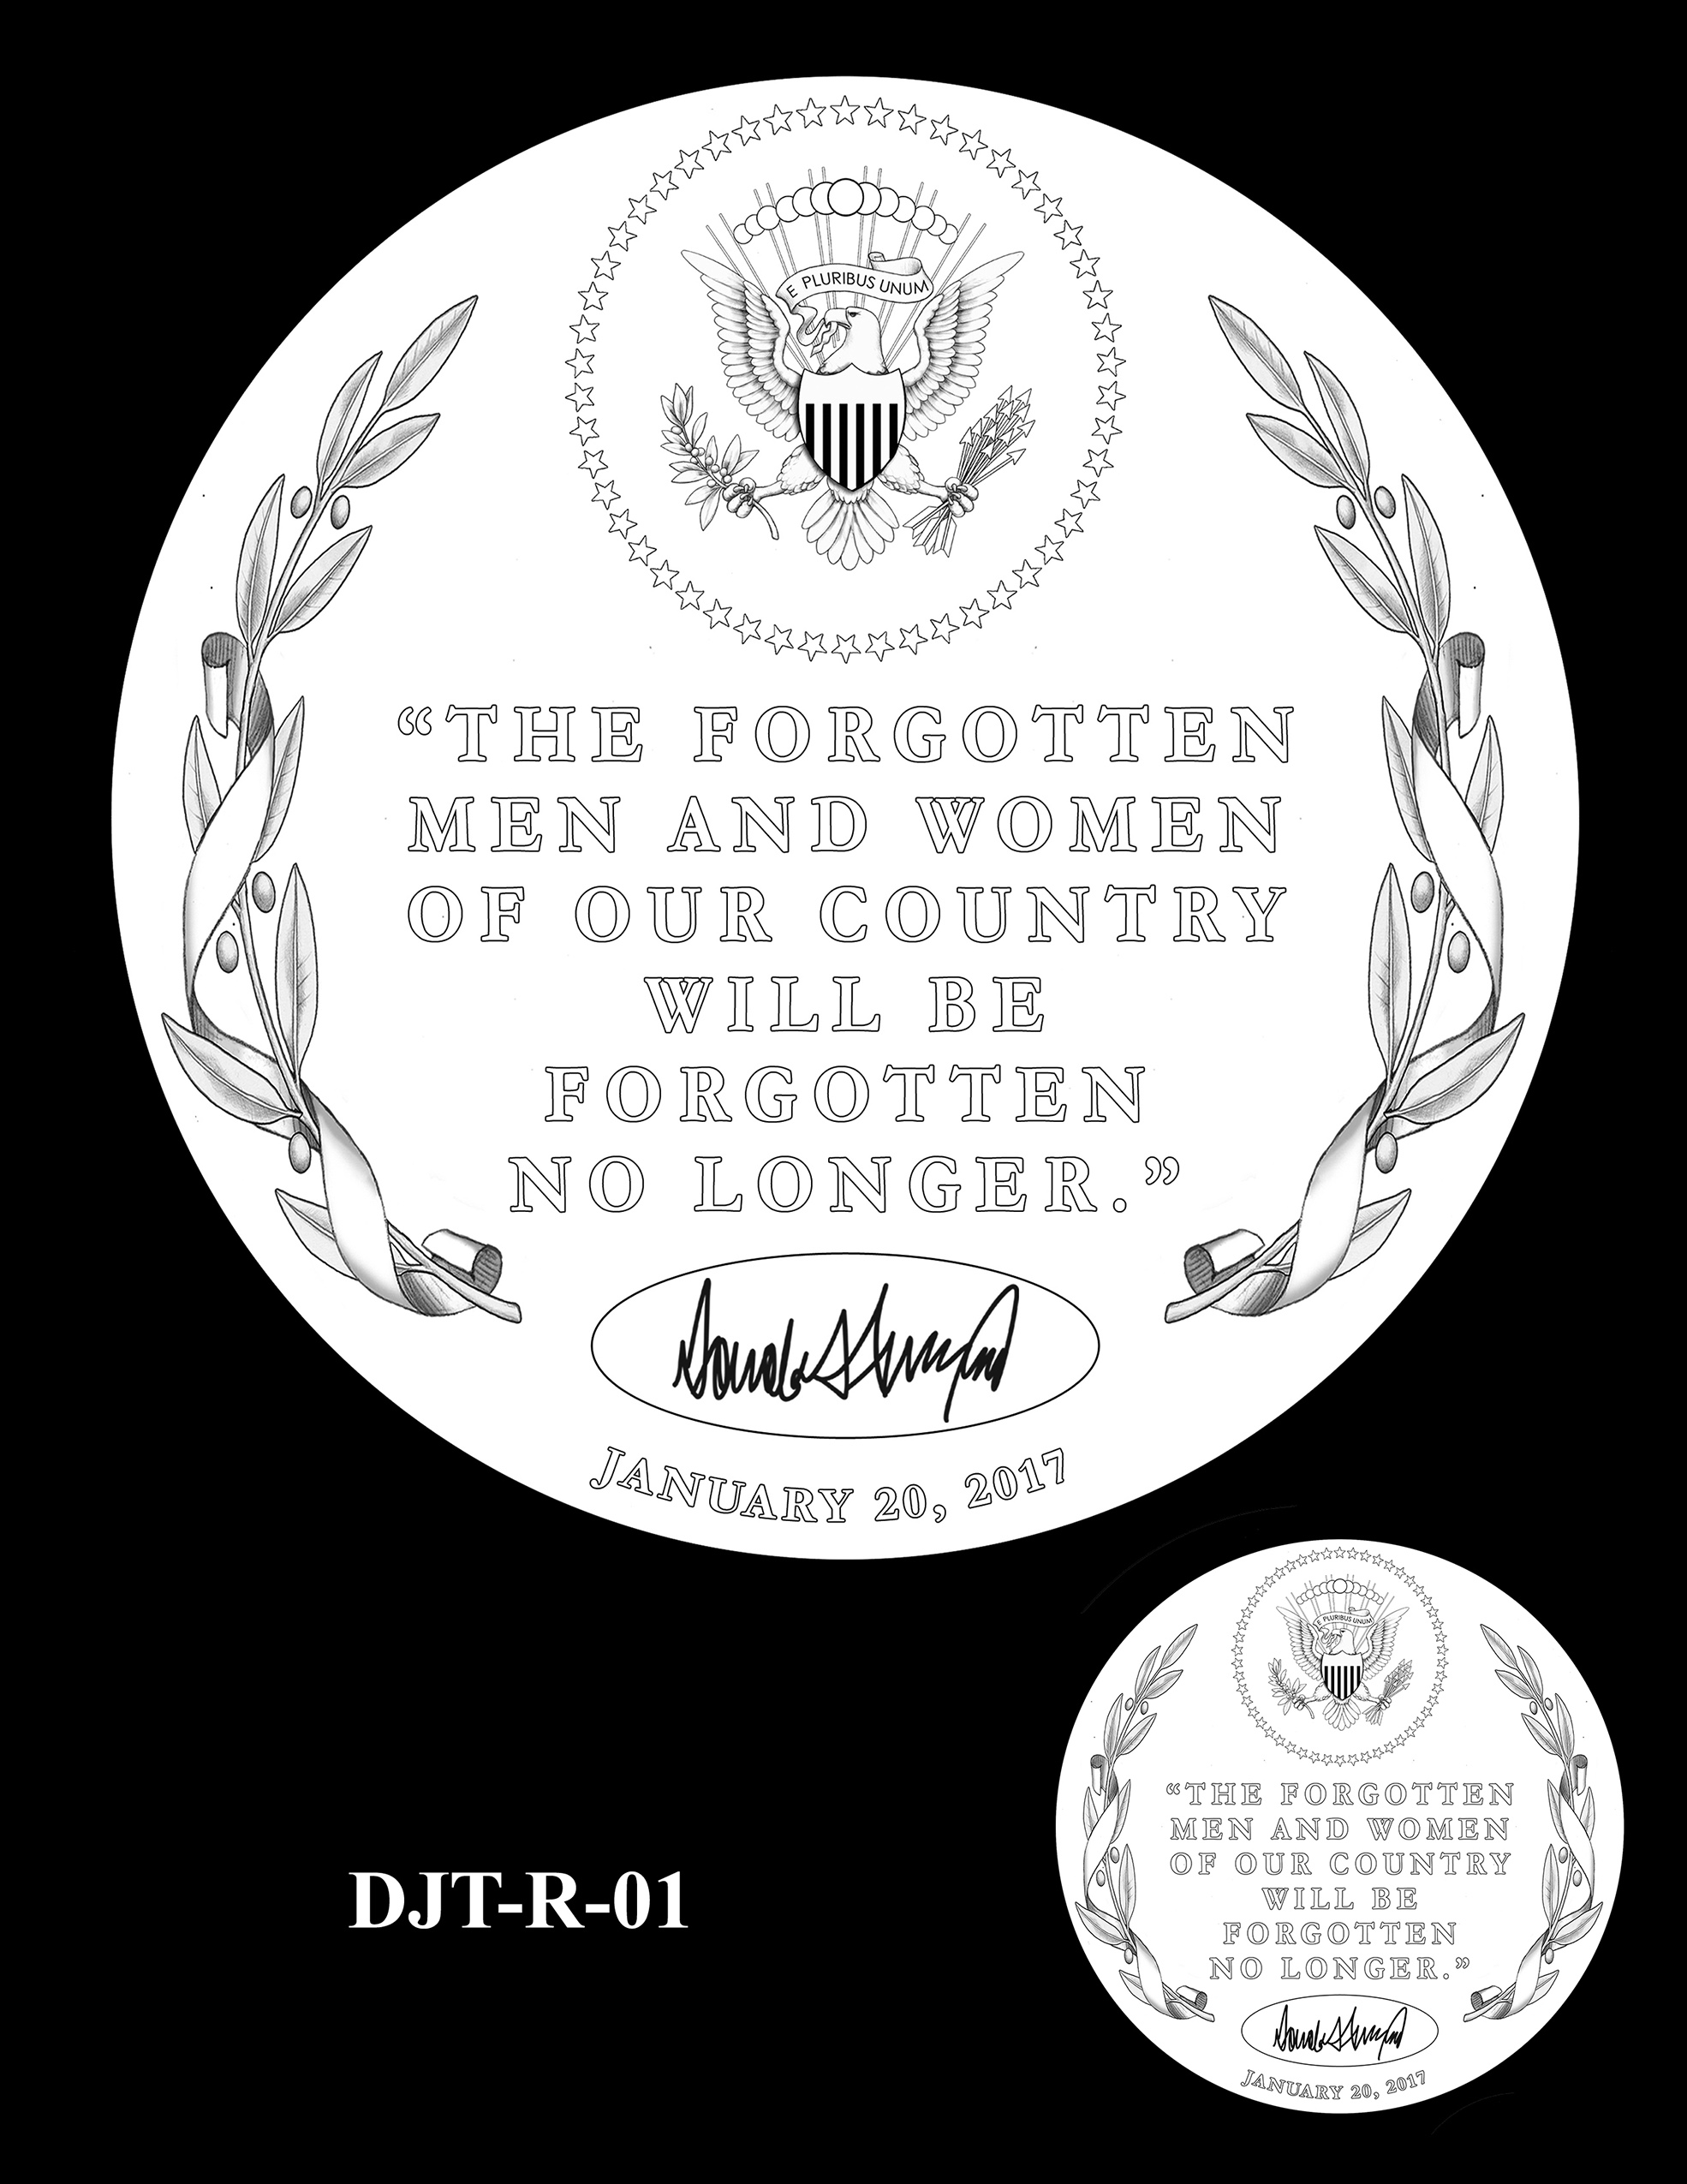 DJT-R-01 -- Donald J. Trump Presidential Medal